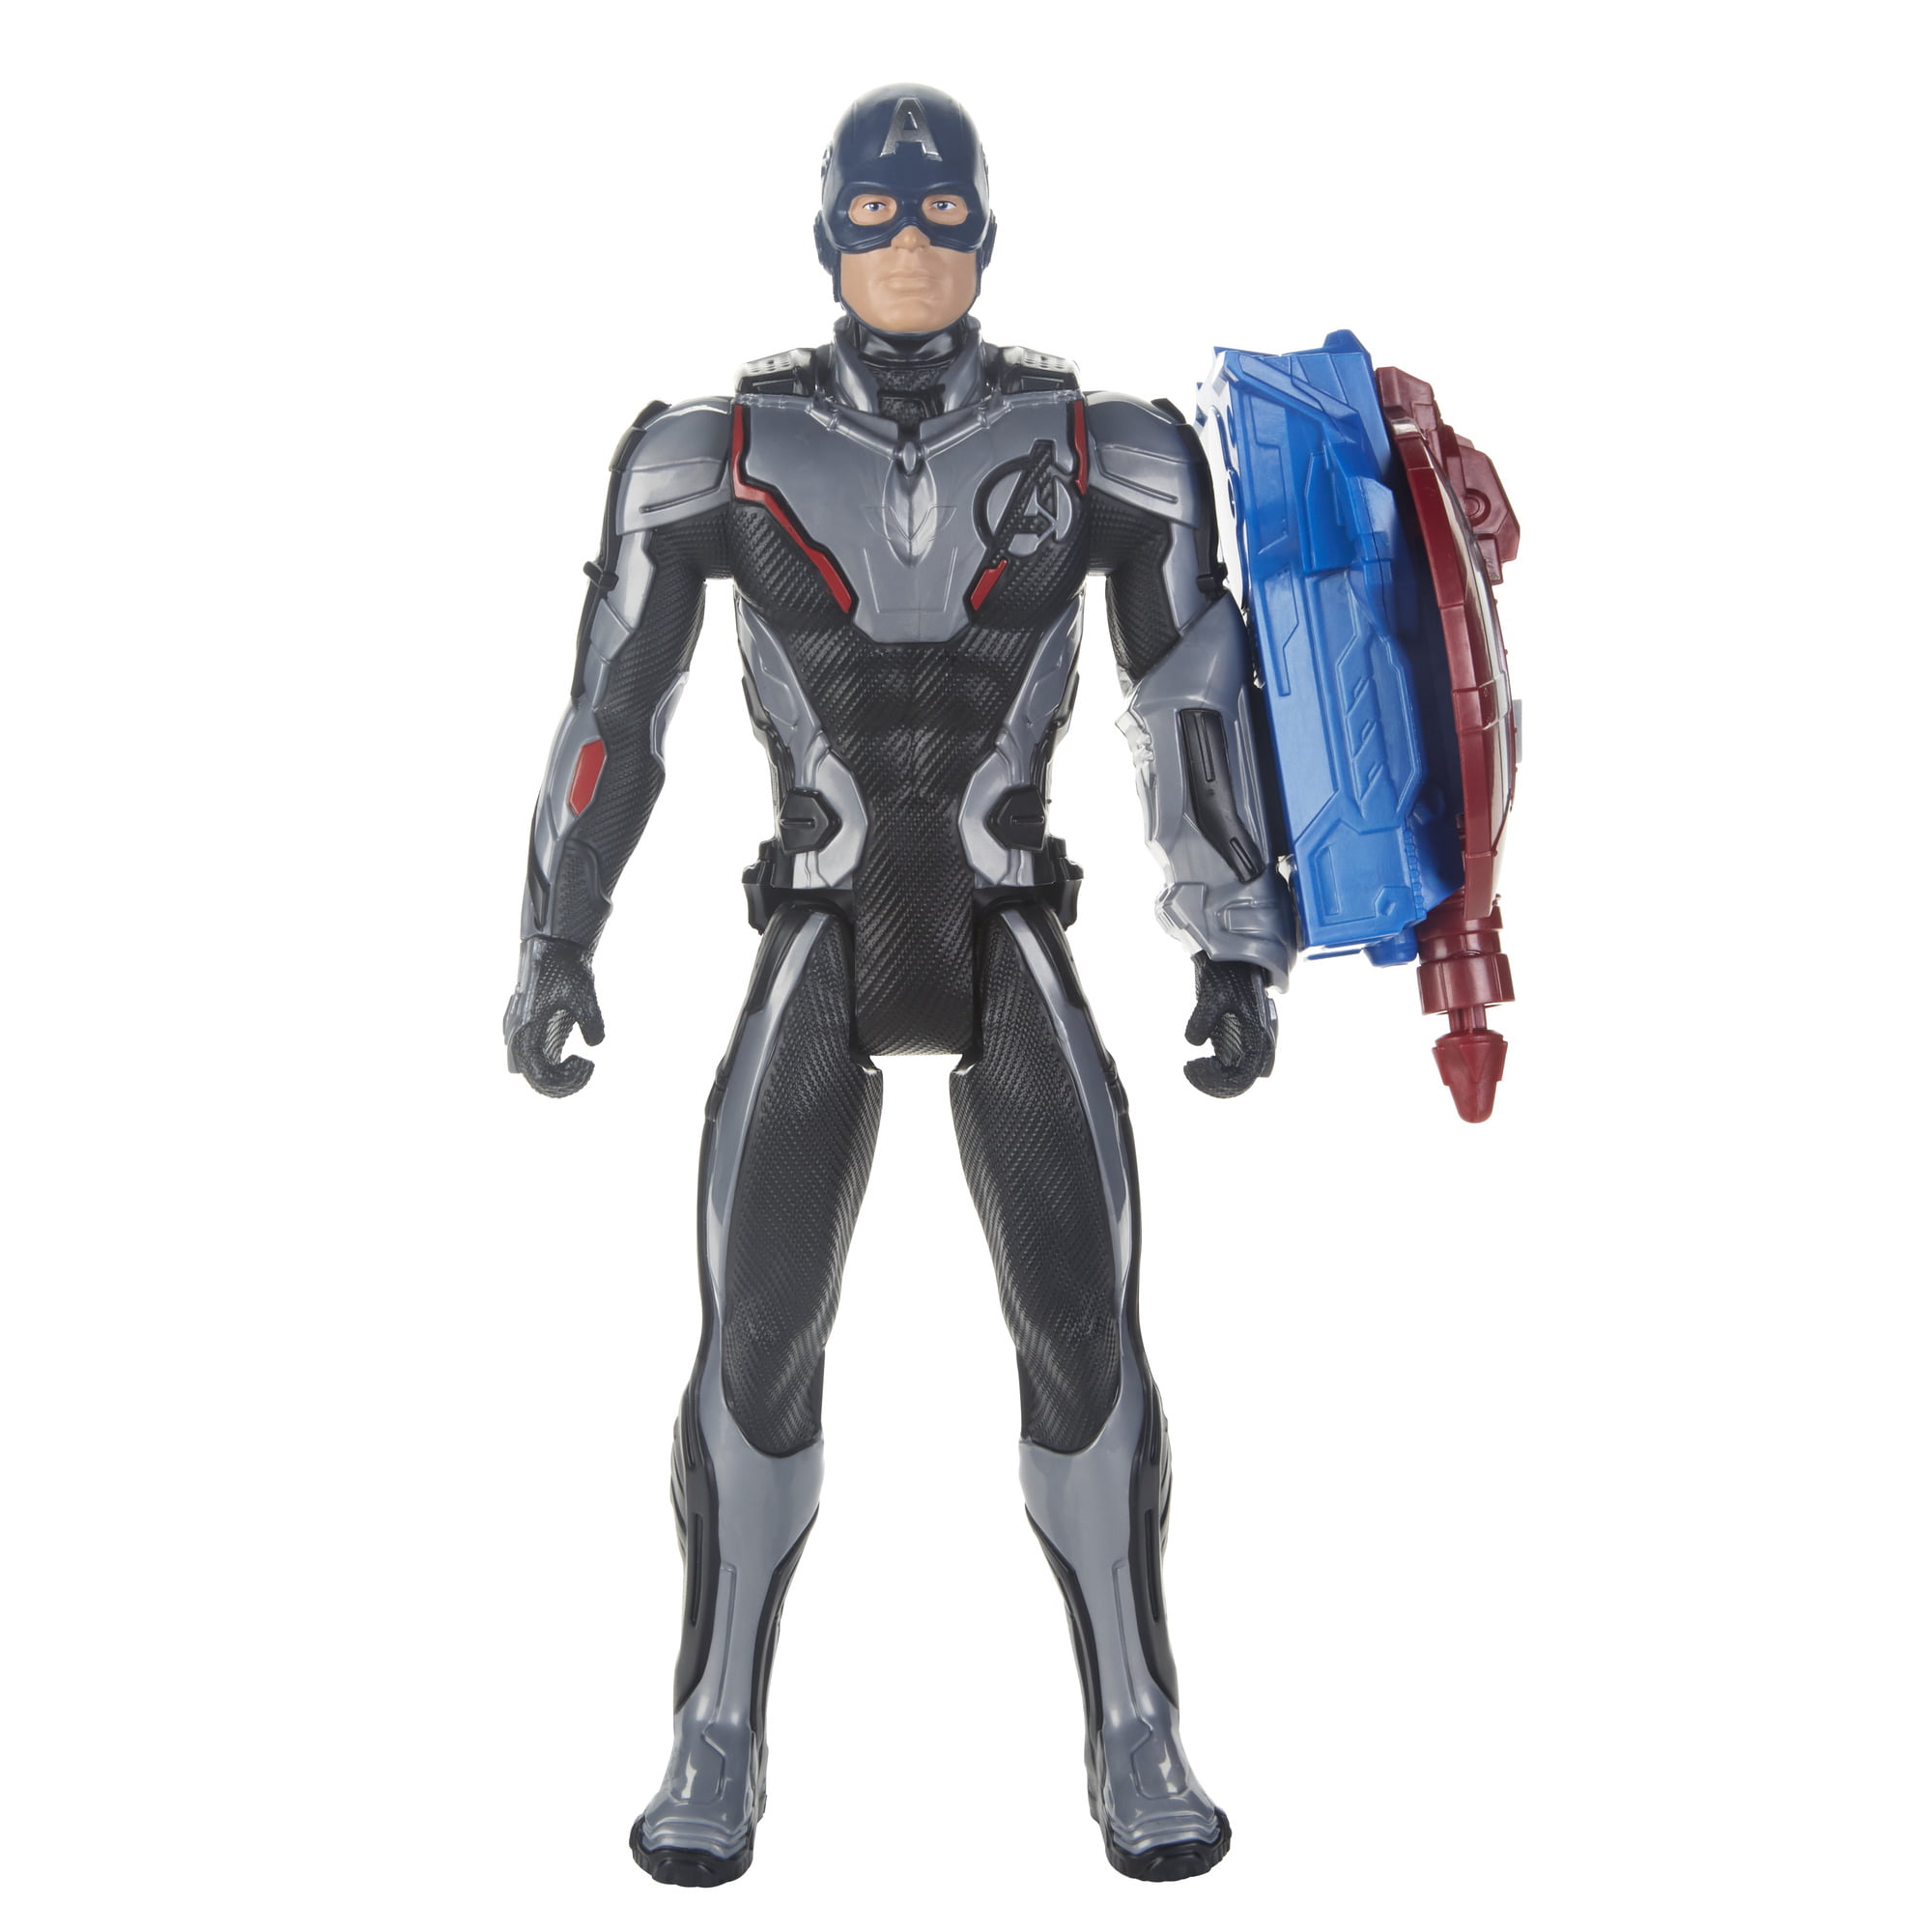 Marvel Avengers: Endgame Titan Hero Power FX Captain America Figure 